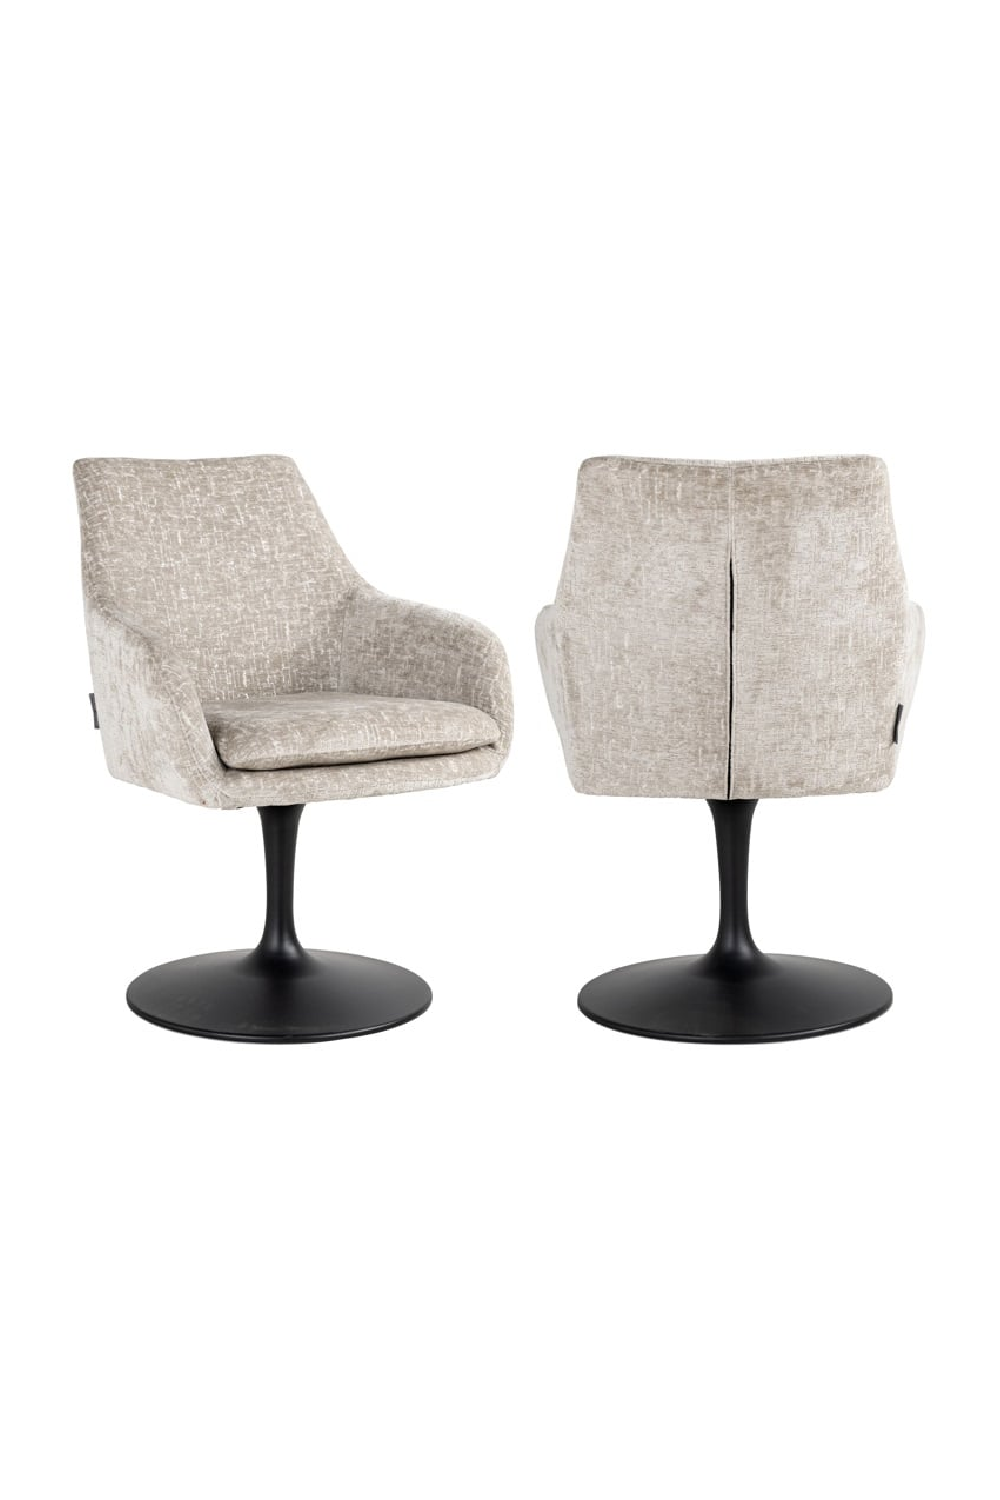 Pedestal Upholstered Swivel Chair | OROA Marlon | Oroa.com